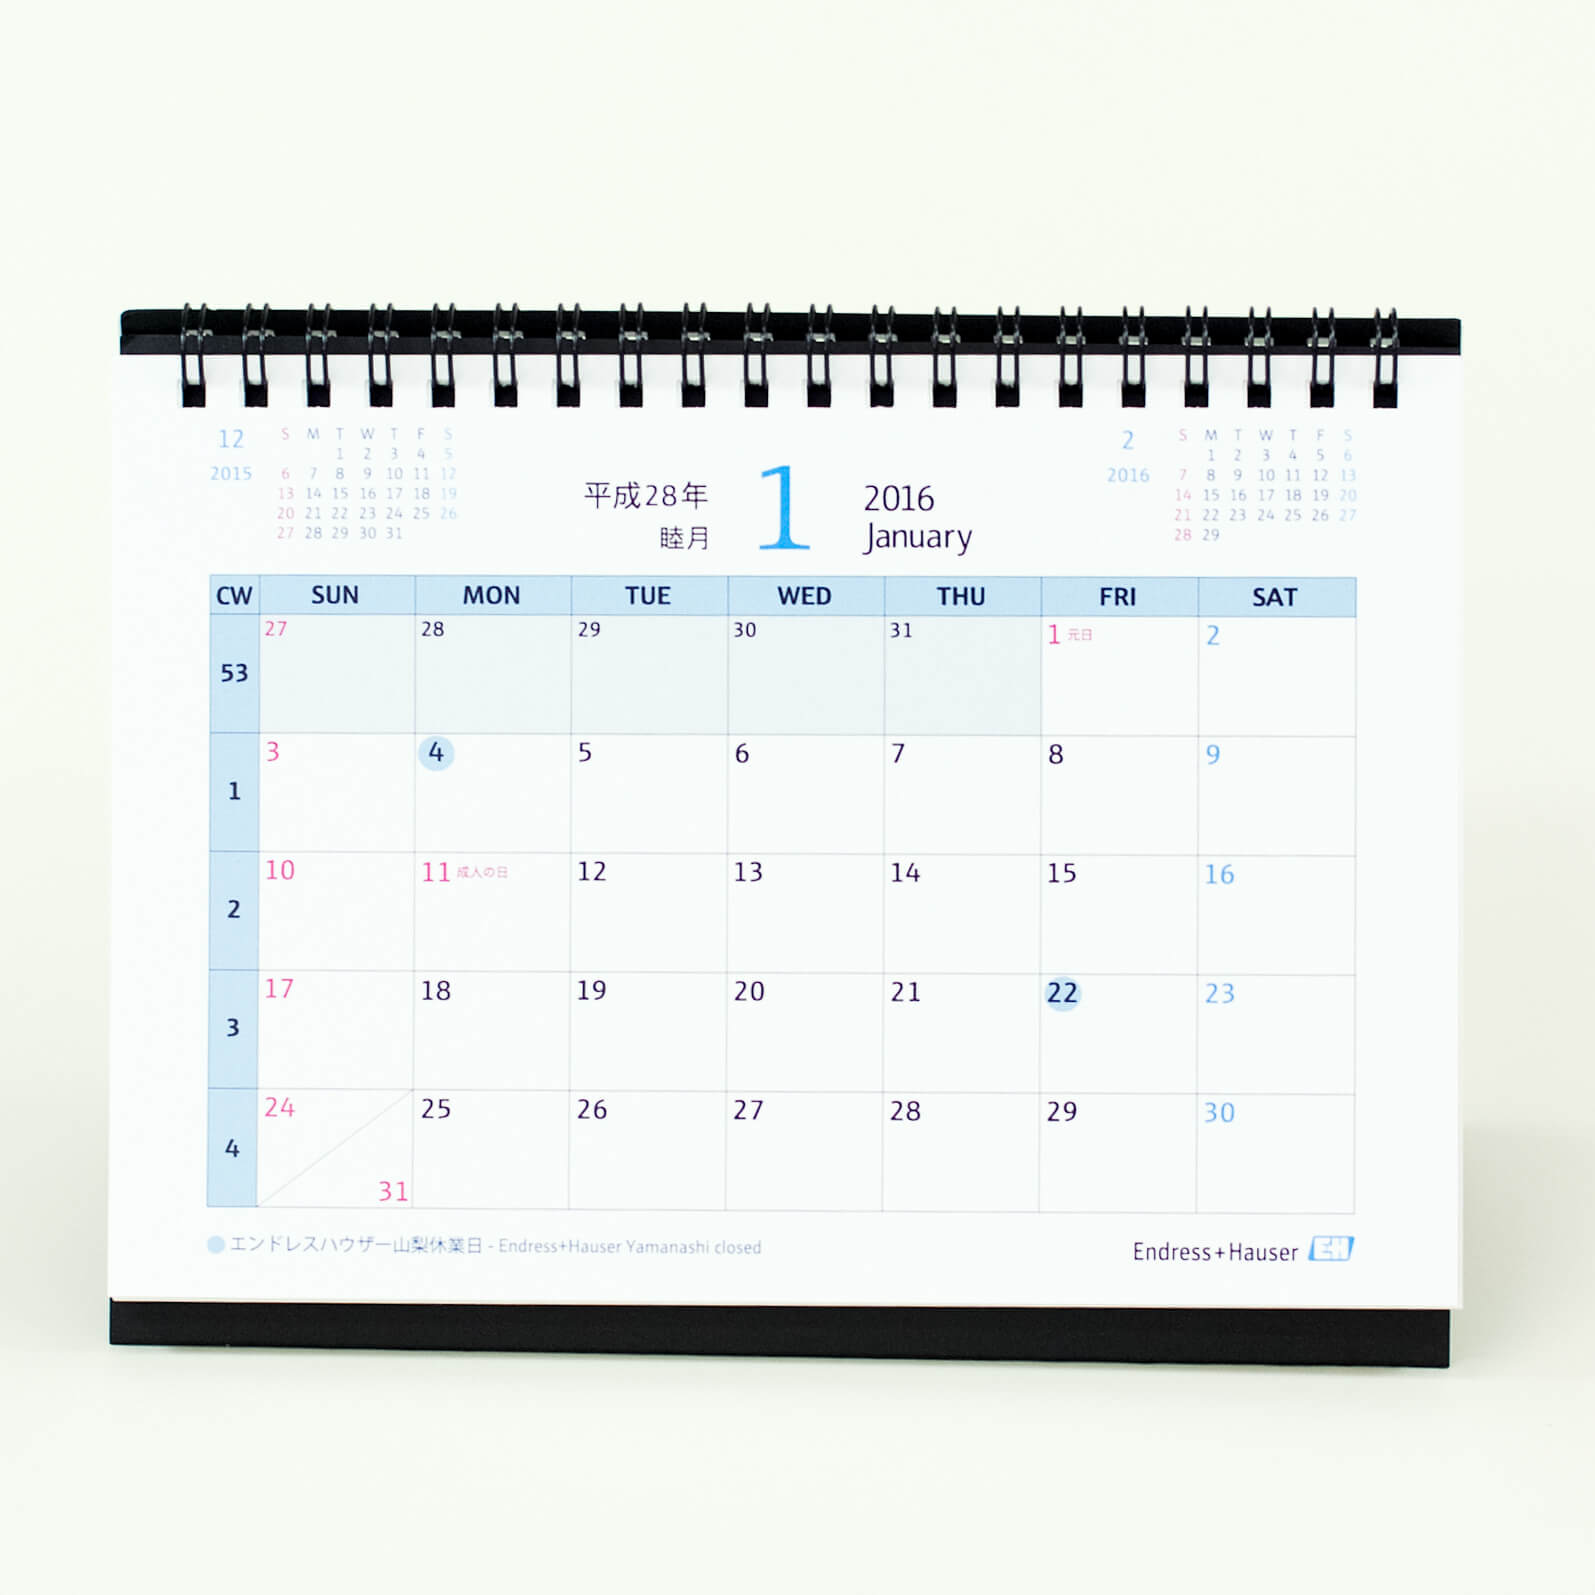 「エンドレスハウザー山梨株式会社 様」製作のオリジナルカレンダー ギャラリー写真2